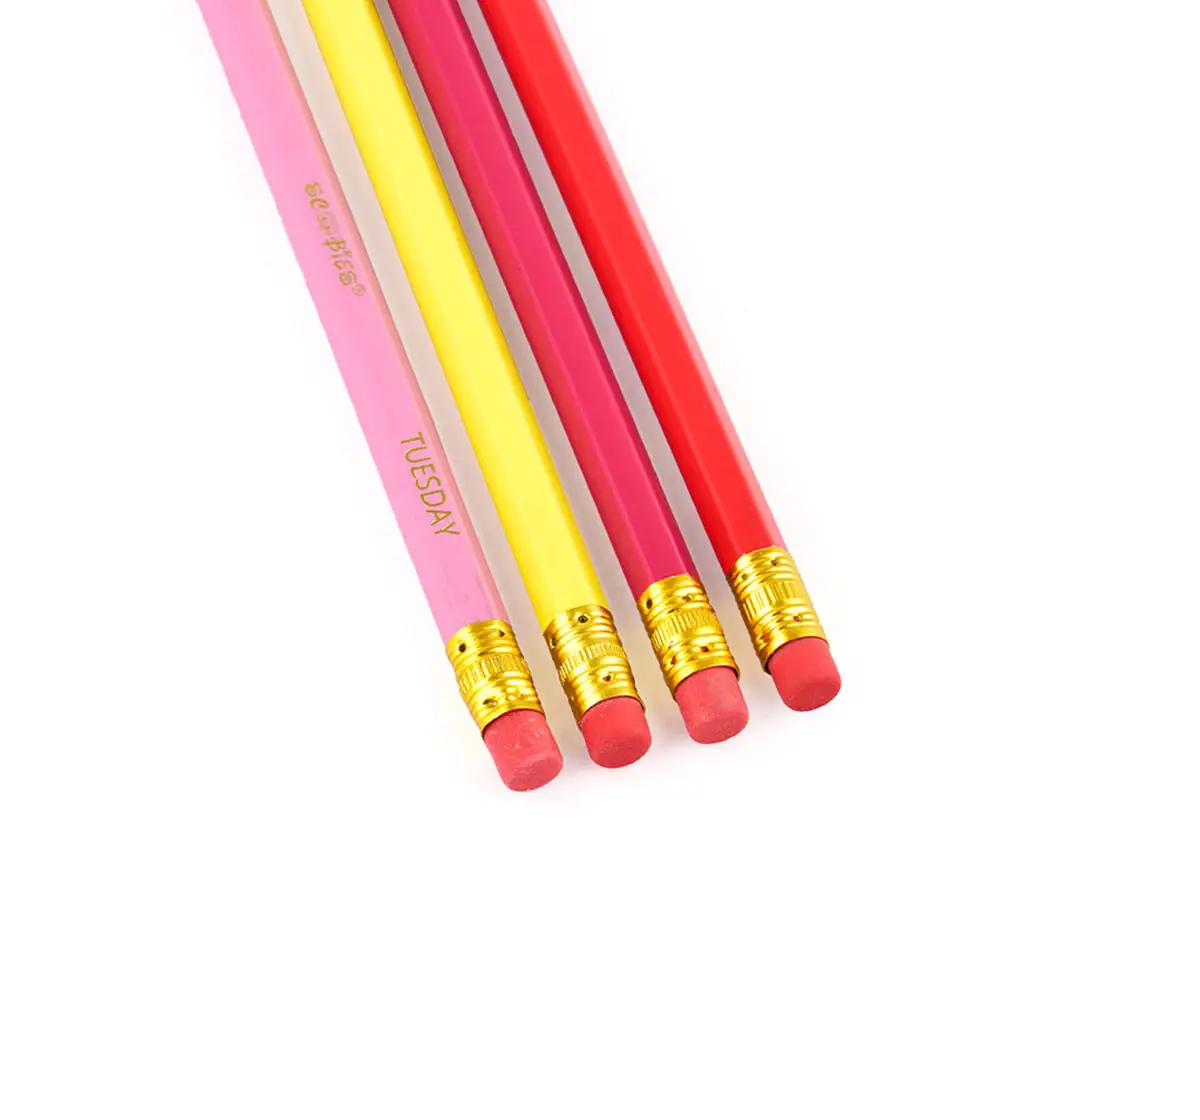 Scoobies HB Pencils Pack of 12 Neon, 3Y+